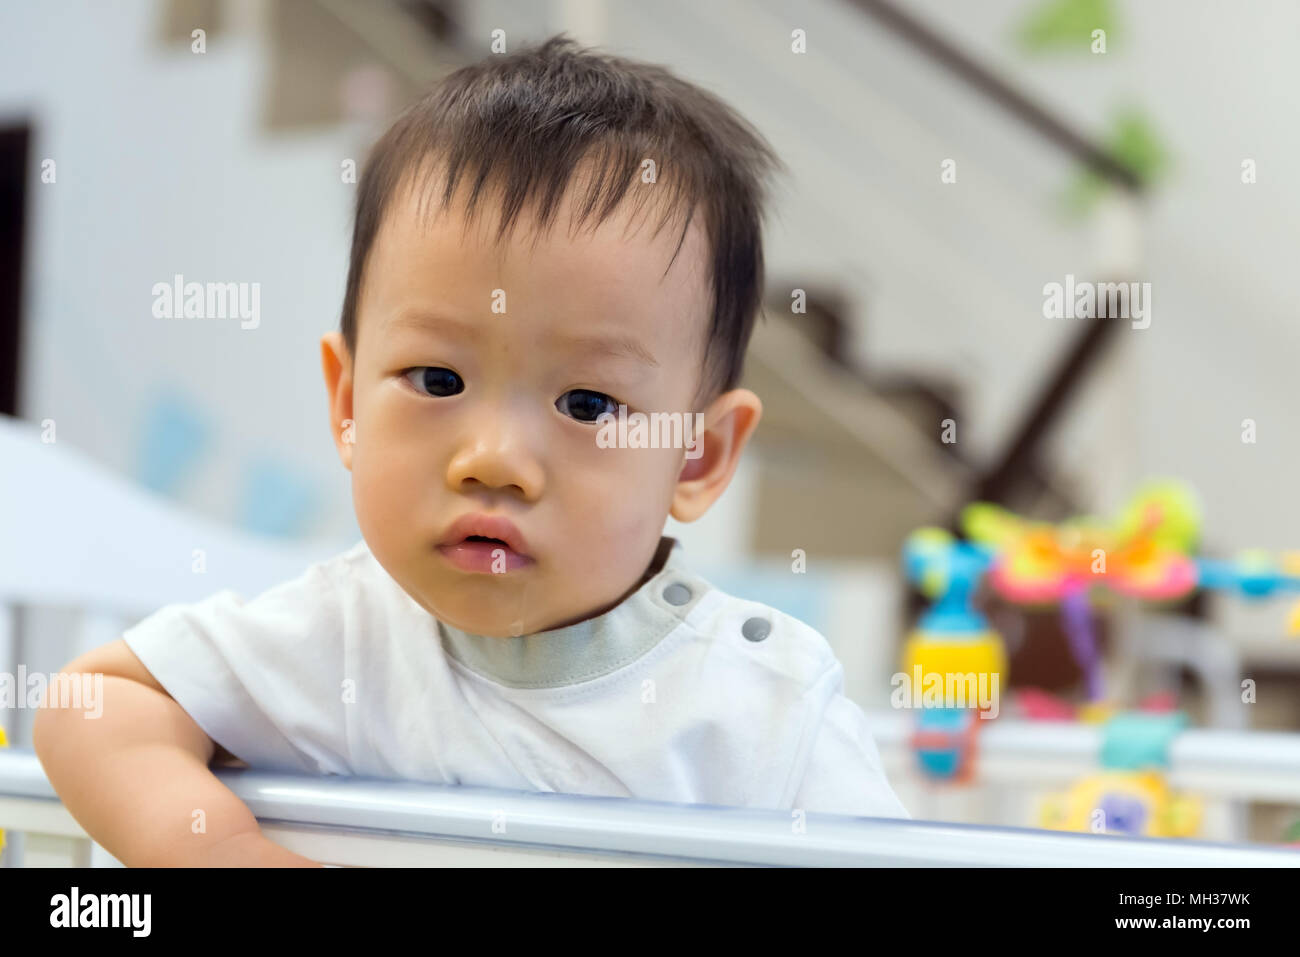 Bébé garçon asiatique mignon en bébé Banque D'Images